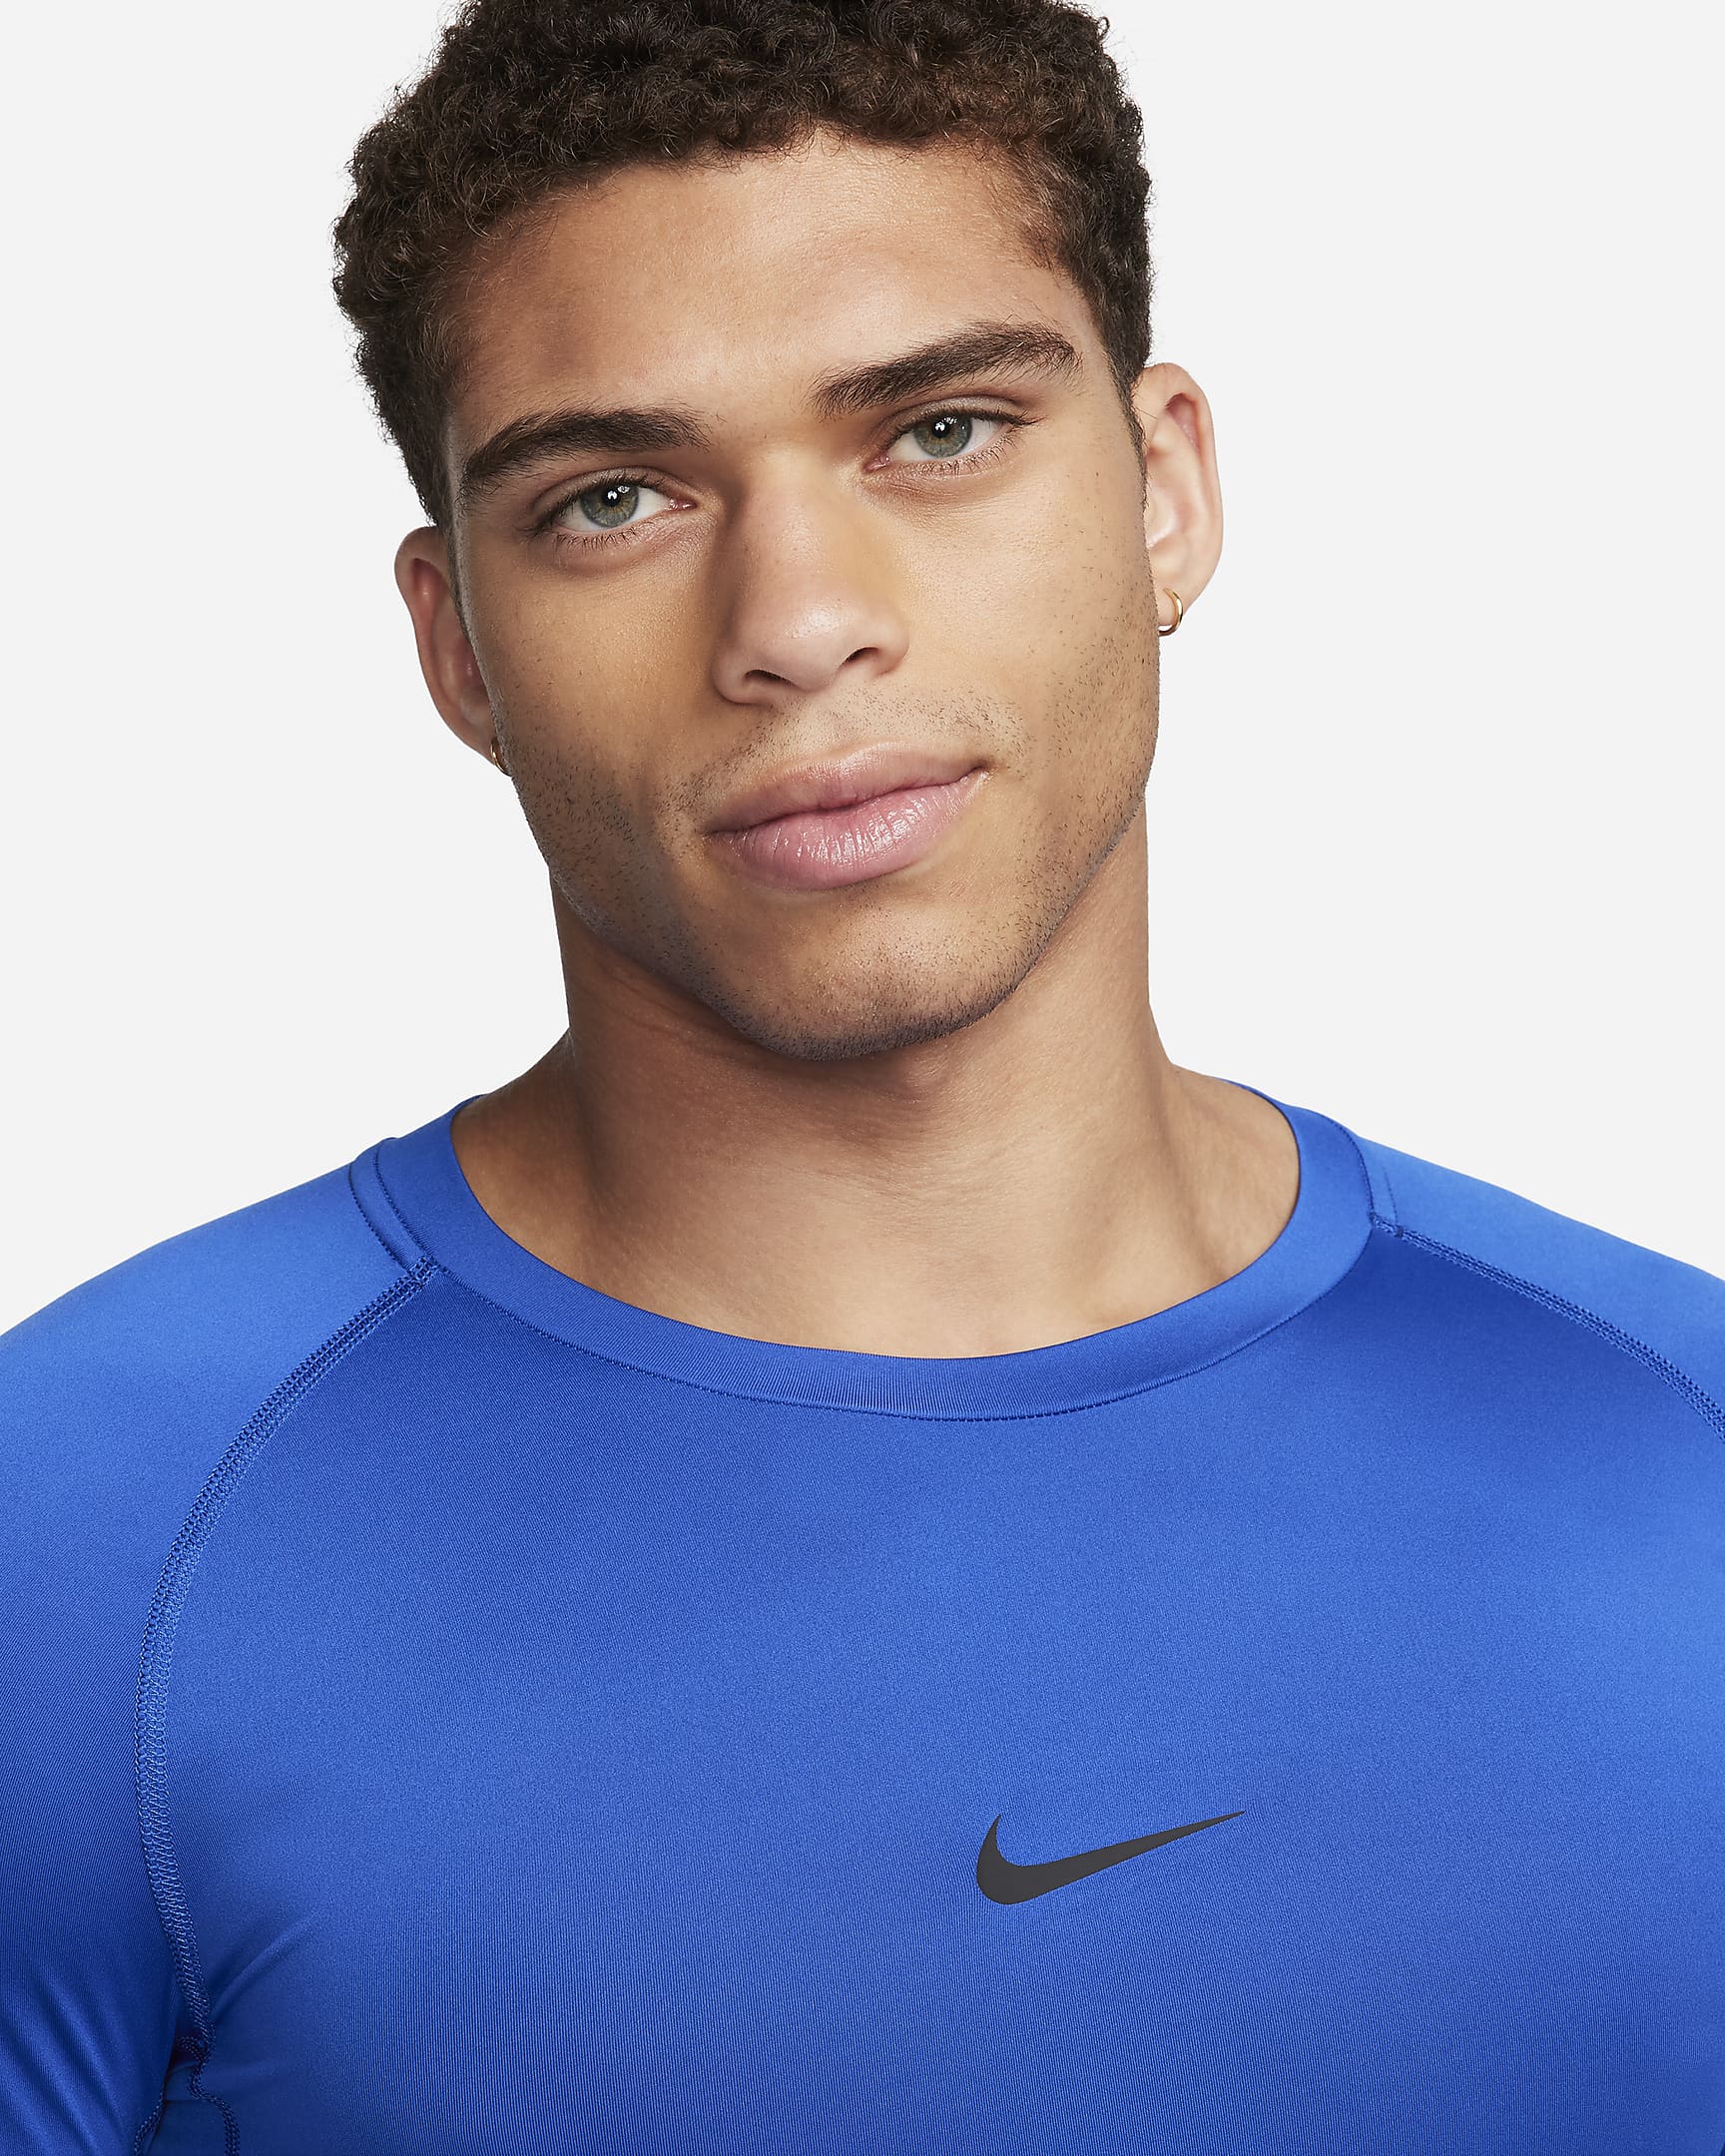 Nike Pro Men's Dri-FIT Tight Long-Sleeve Fitness Top - Game Royal/Black